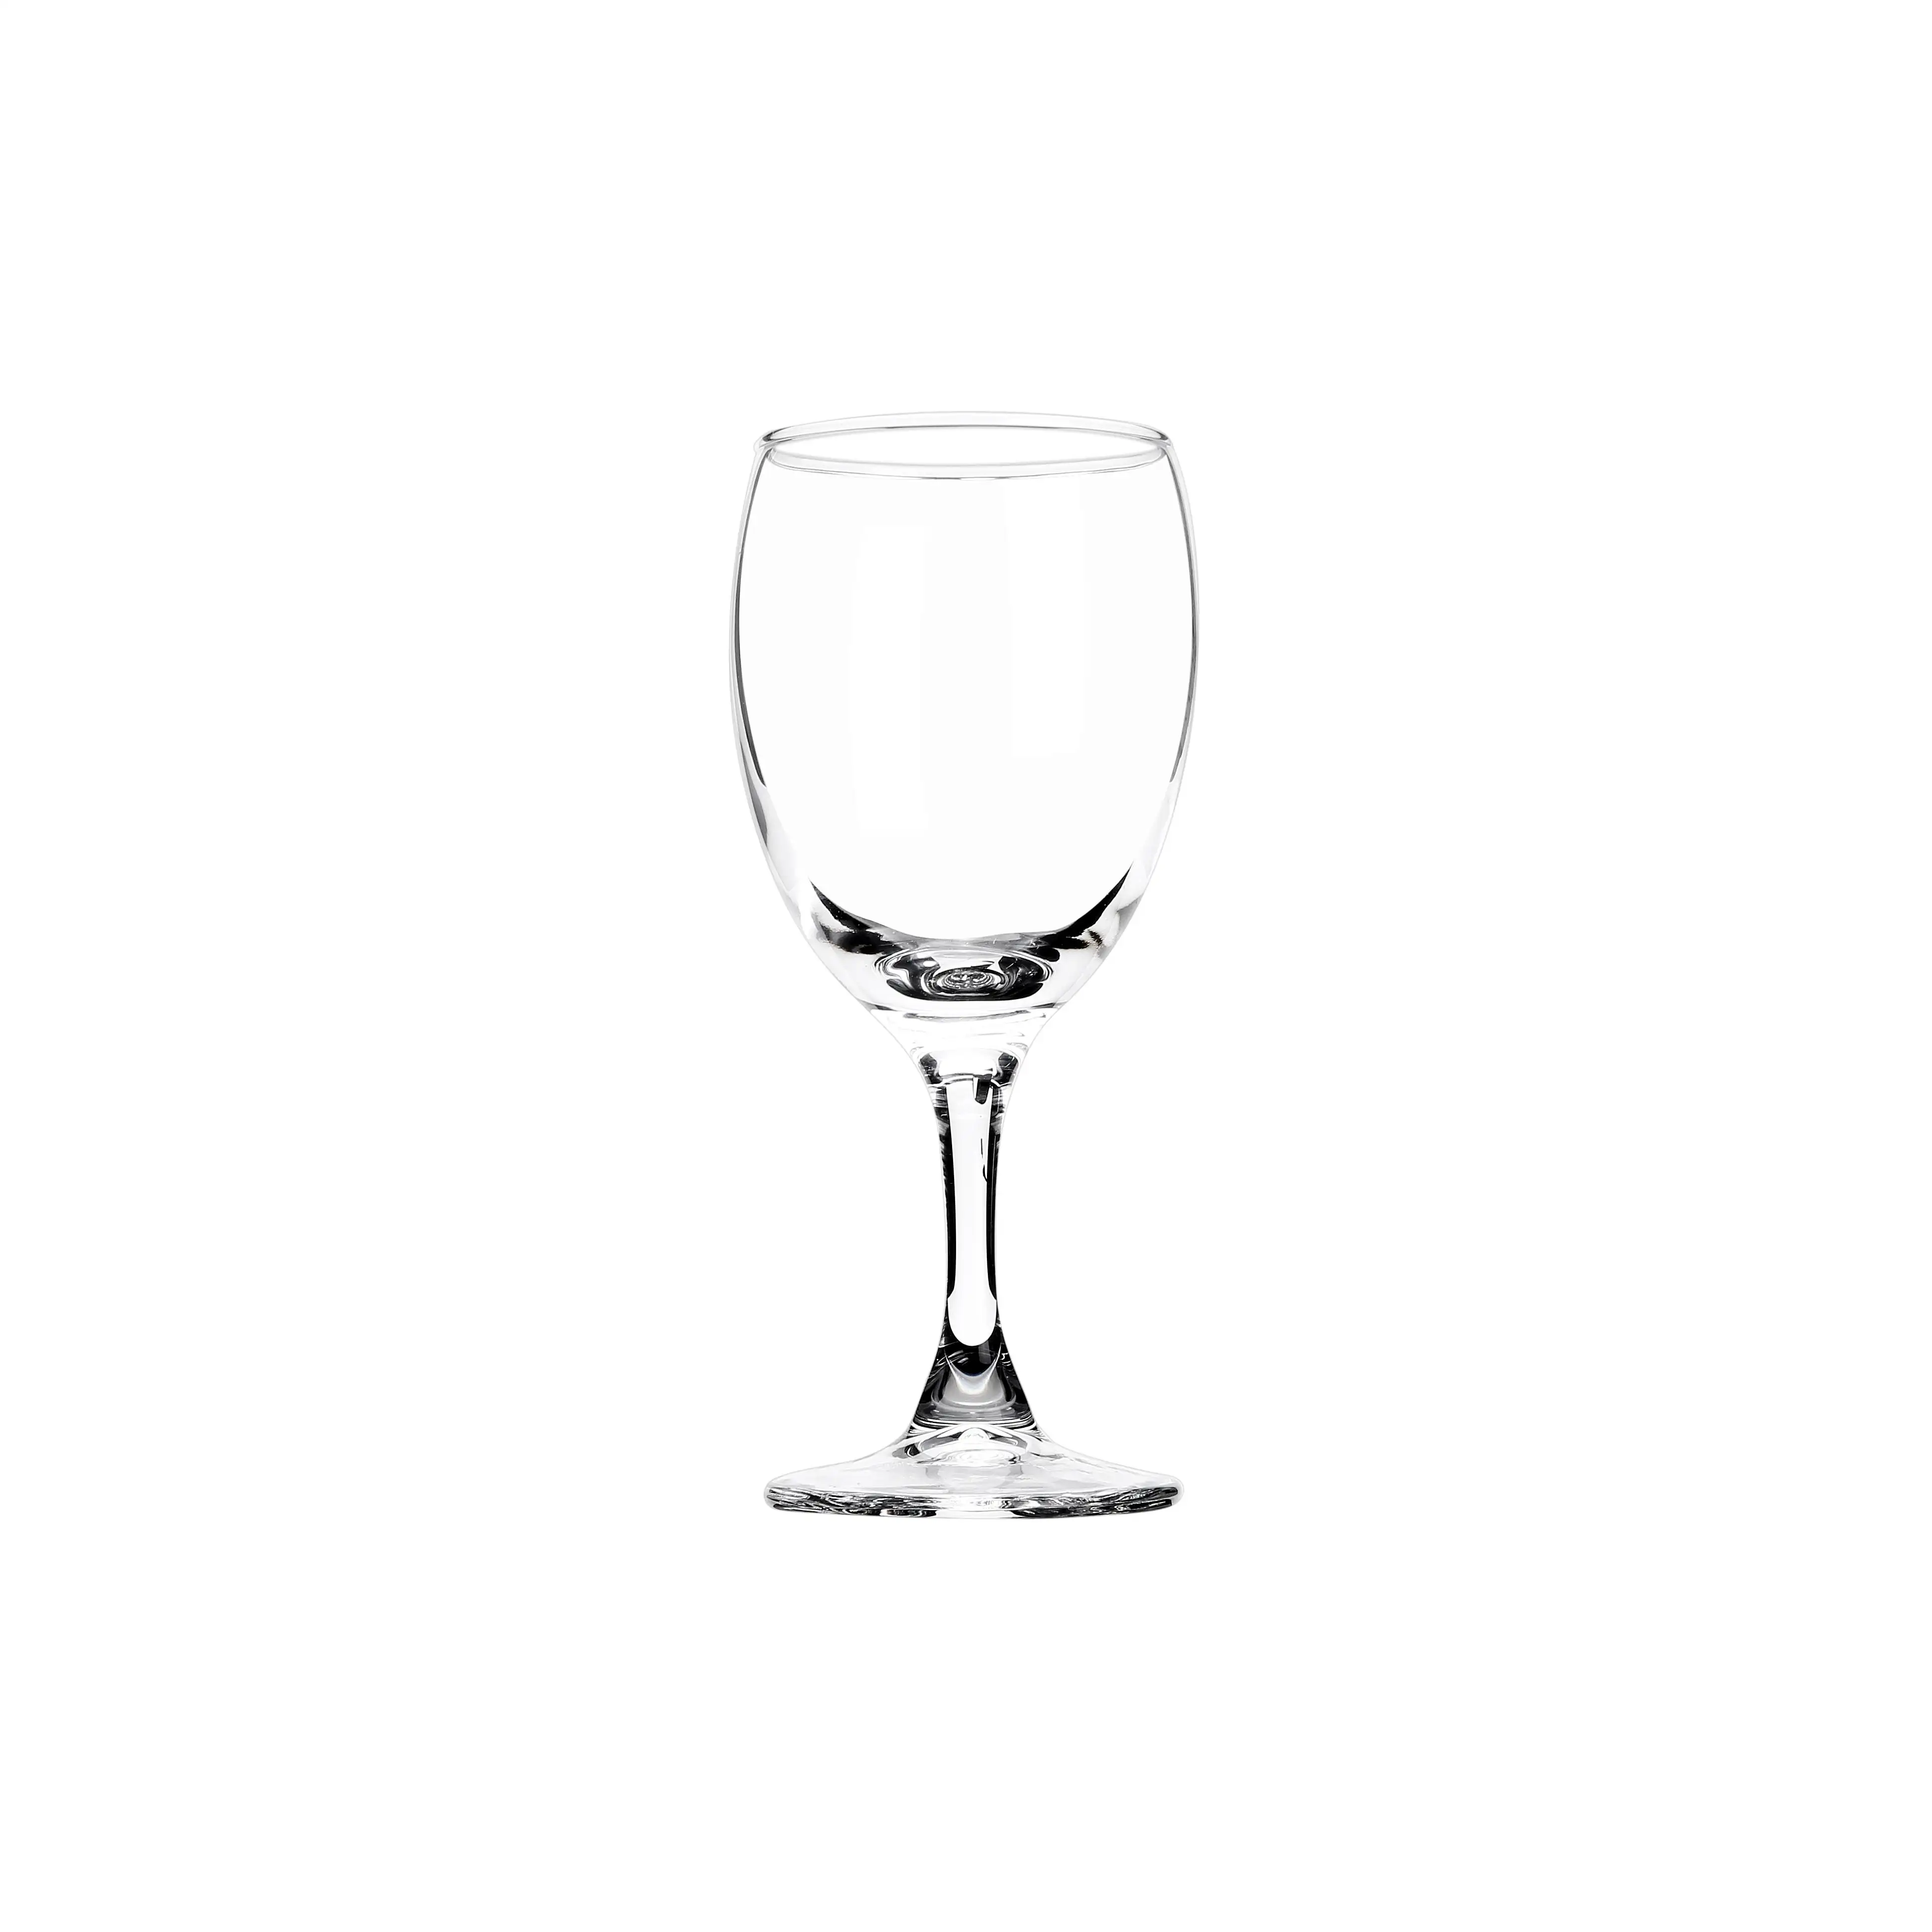 Barato venta caliente de vidrio de vino rojo de alta calidad de vidrio de soda cal de vidrio de vino